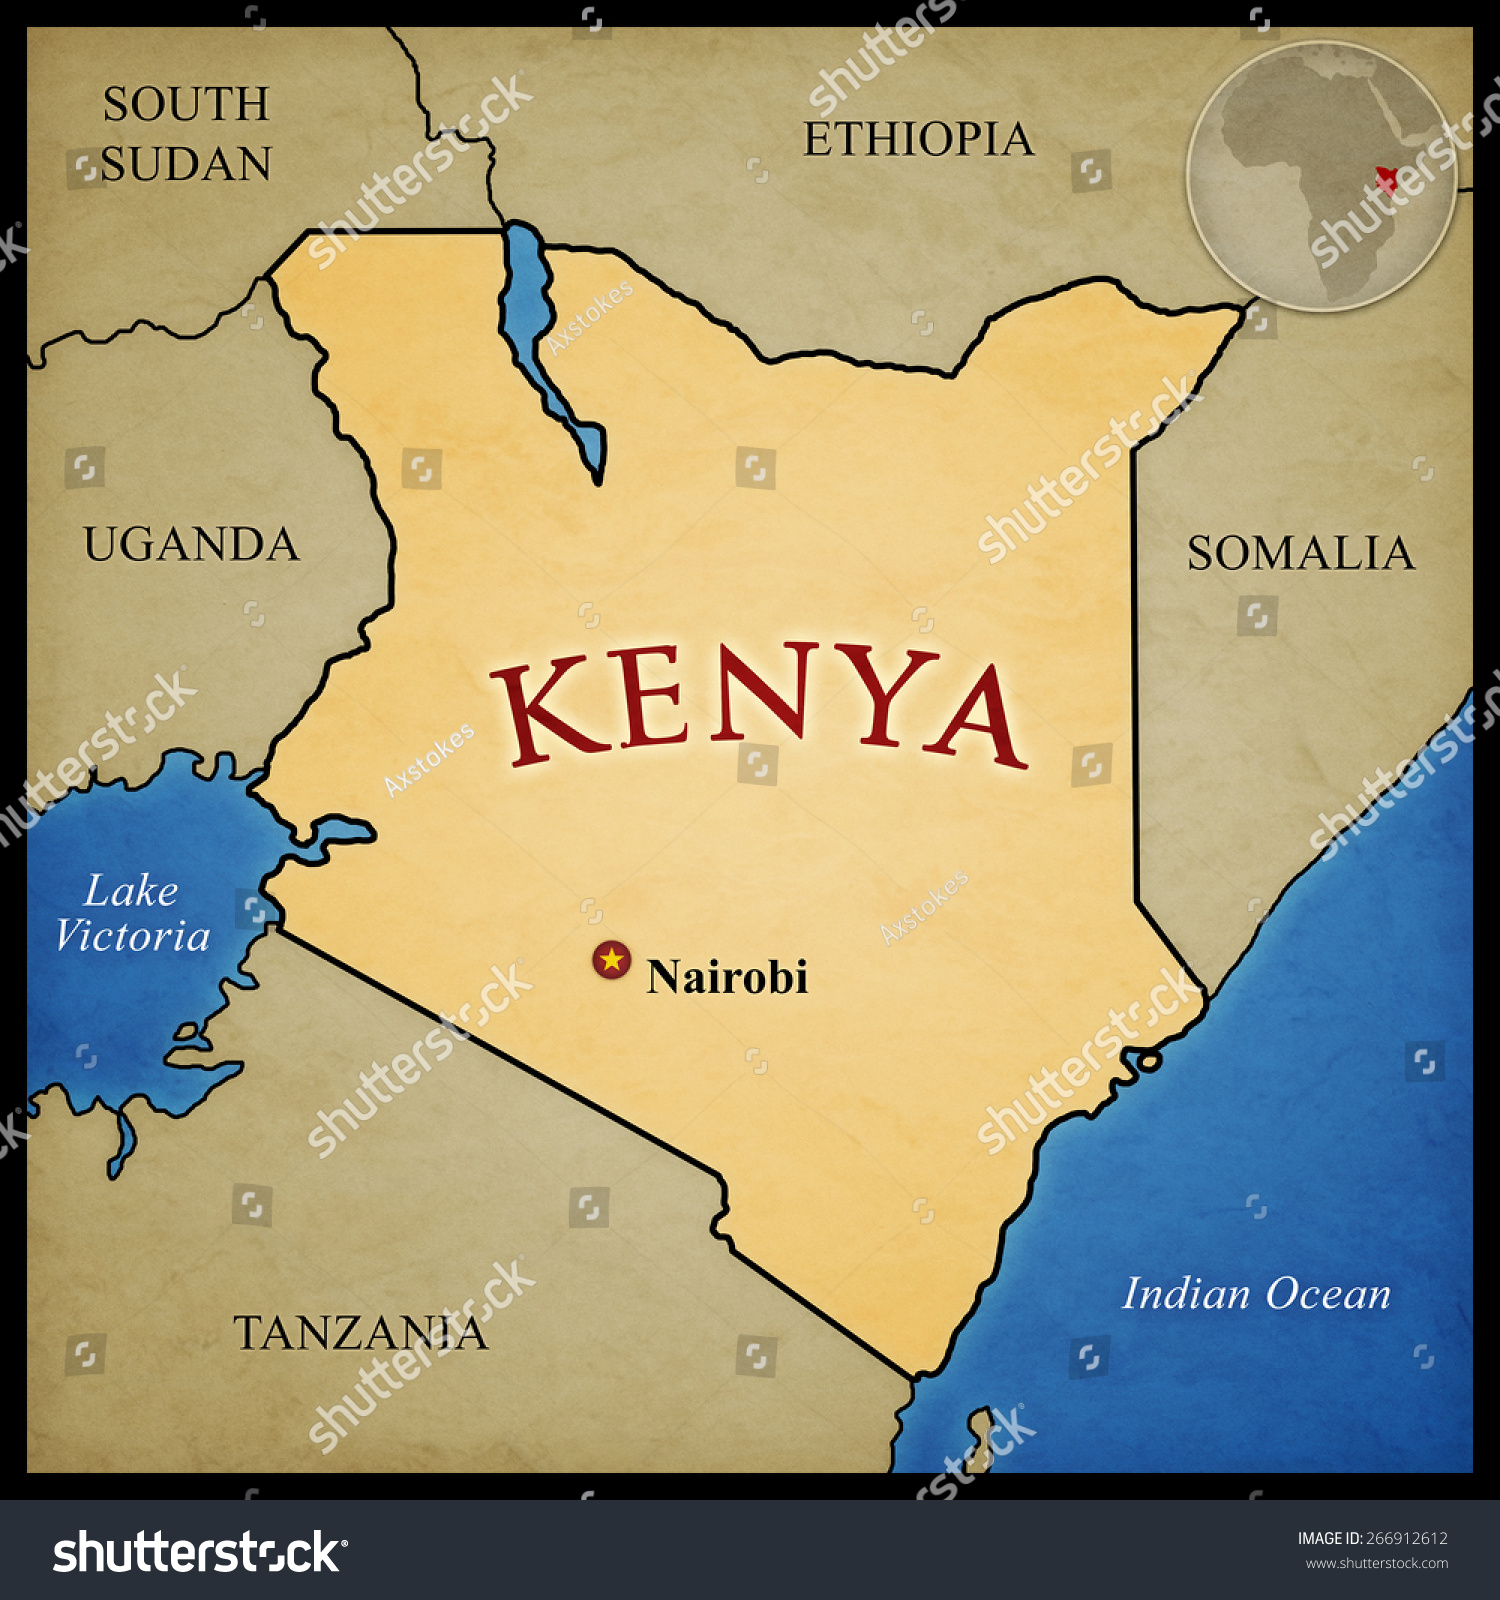 肯尼亚地图和接壤的国家首都内罗毕明显。在非